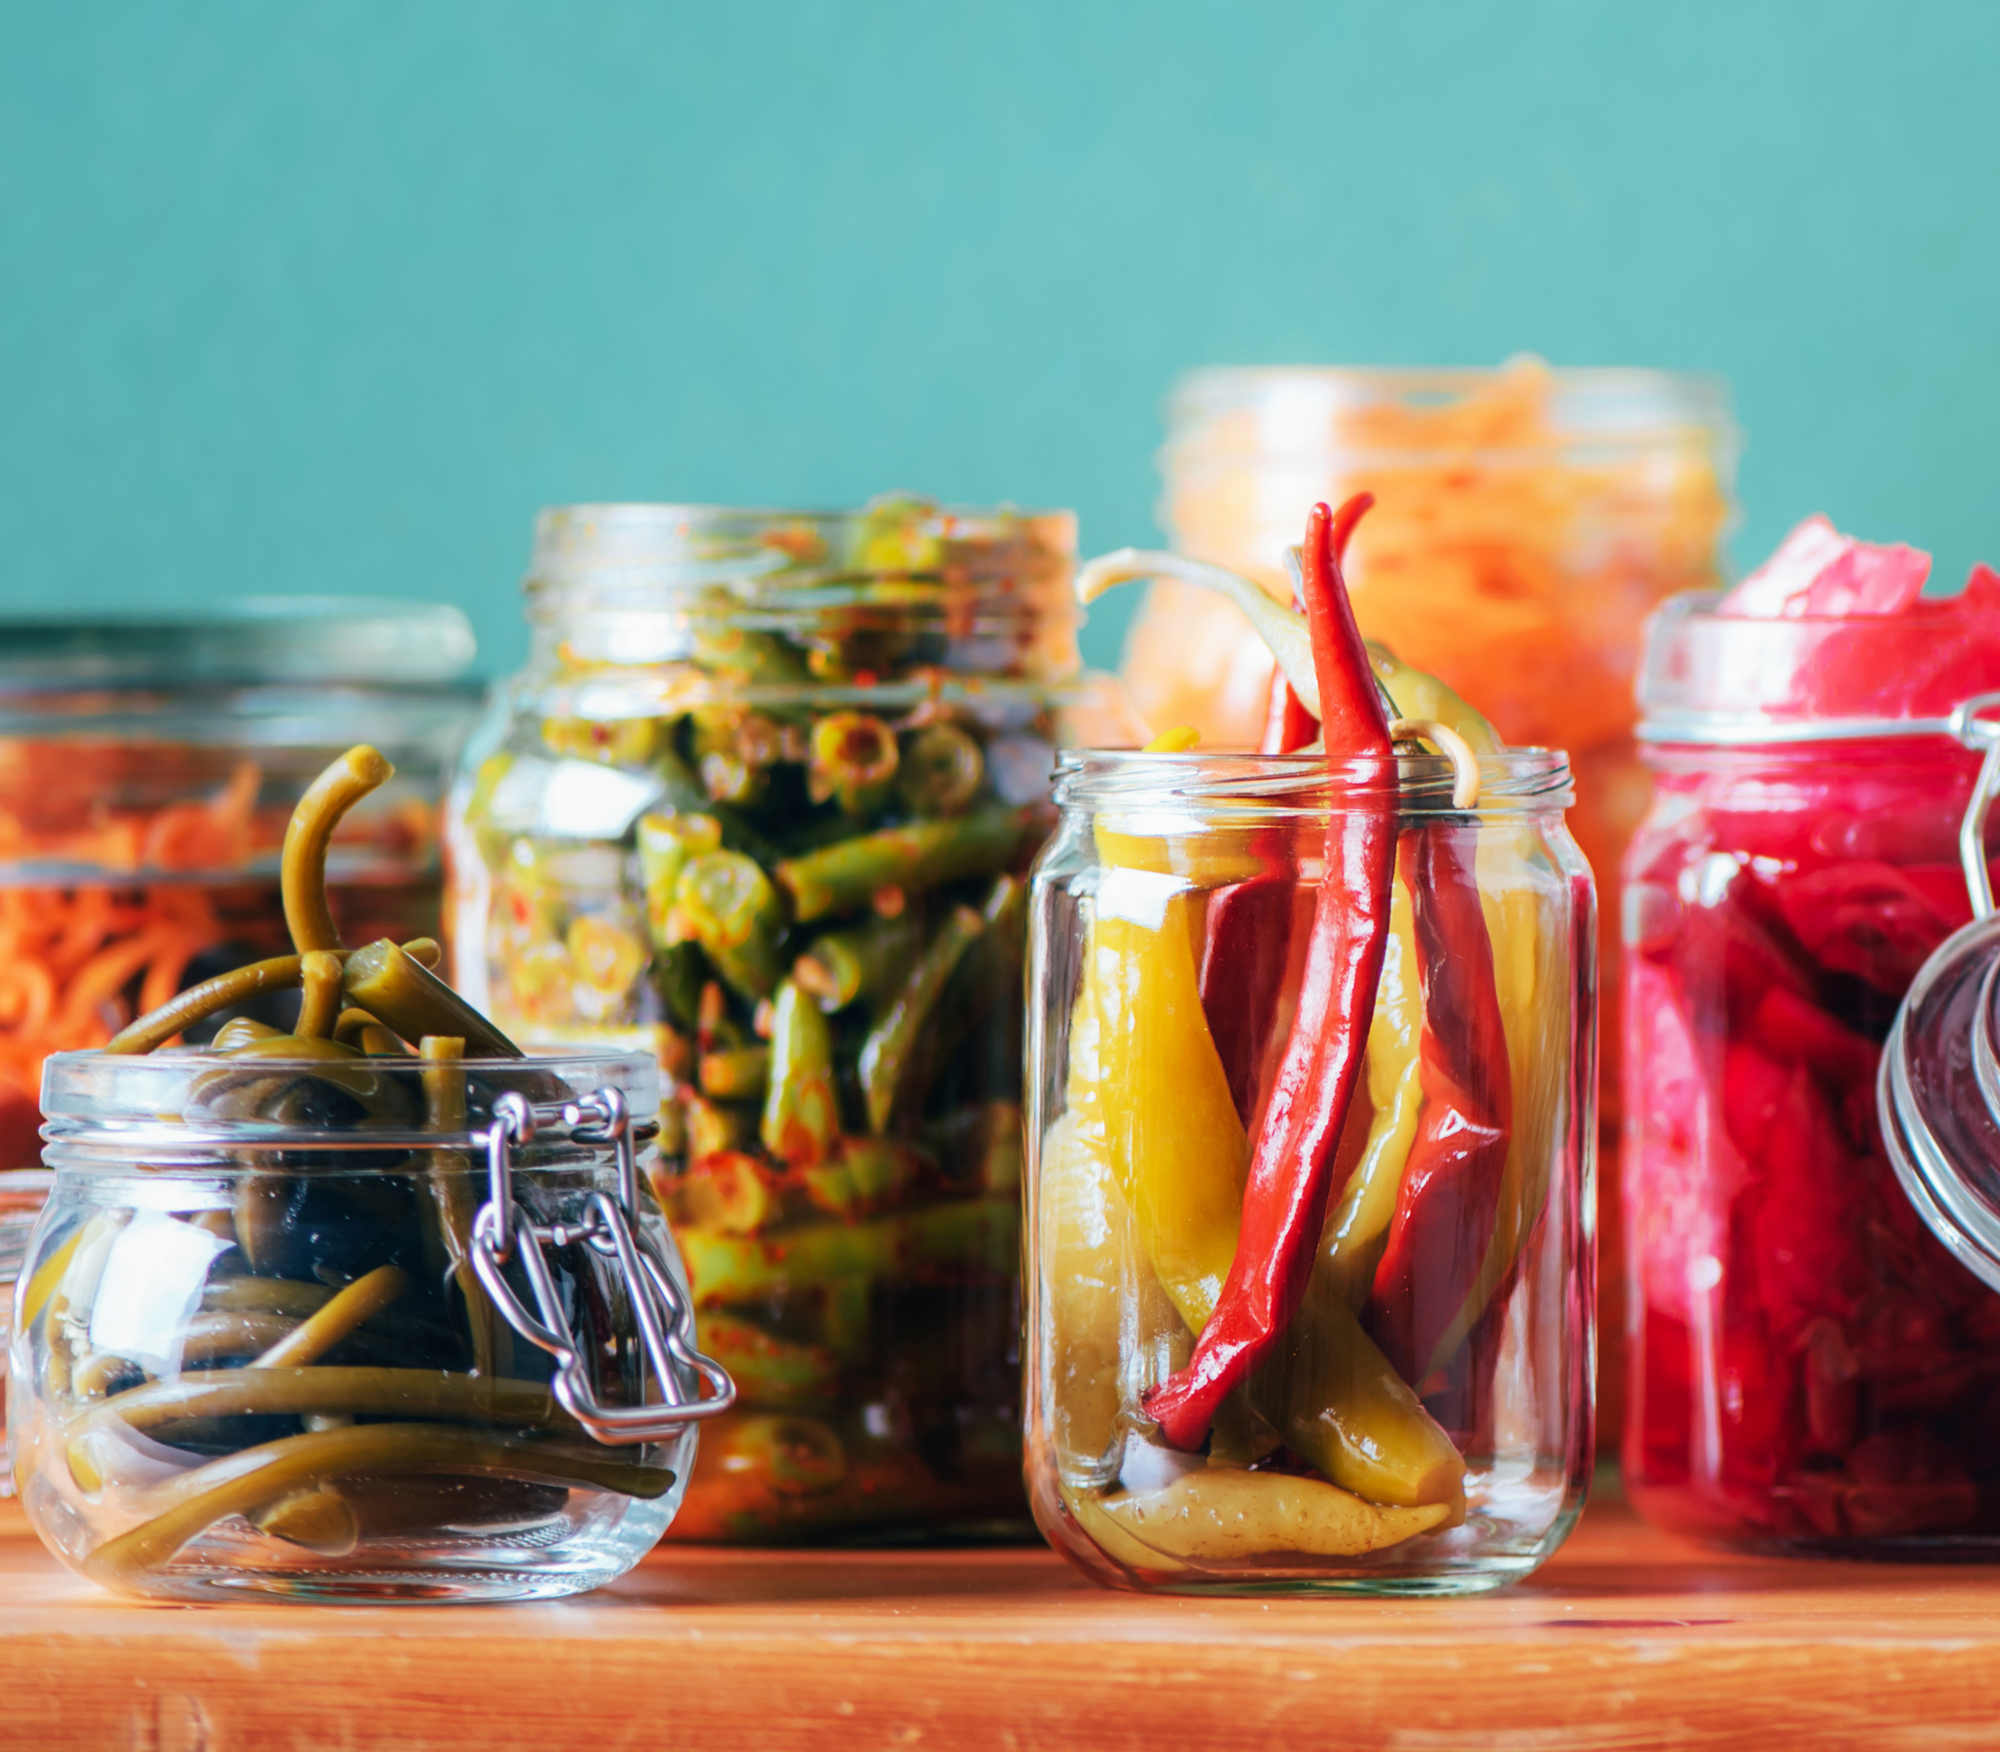 Fermented foods in jars